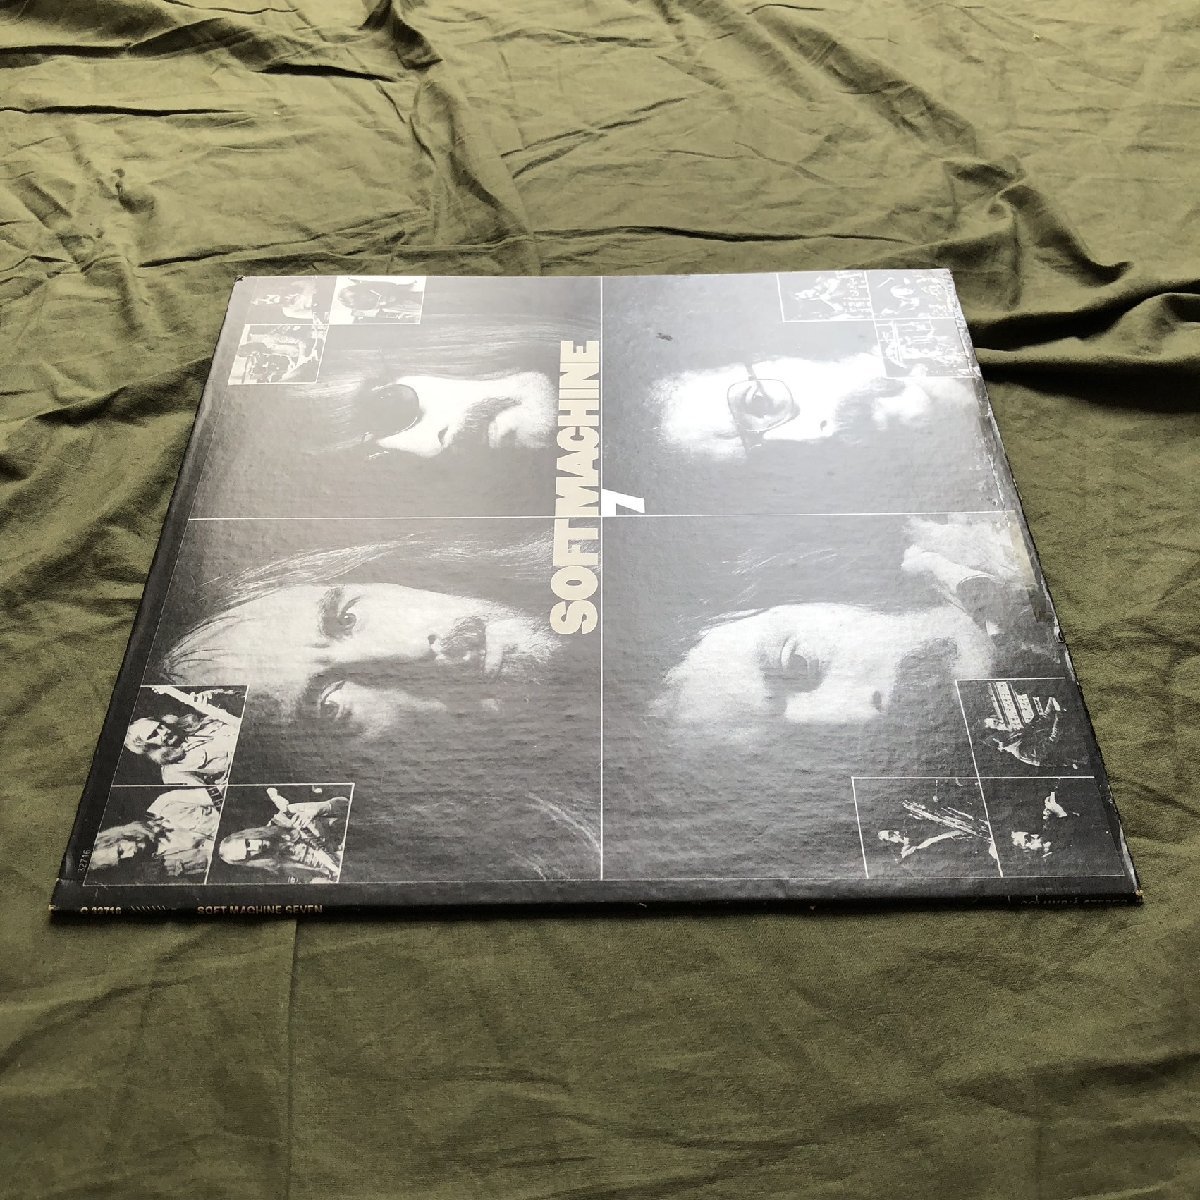 良盤 1974年 米国盤 ソフト・マシーン Soft Machine LPレコード セブン 7 Seven: Acid Fusion Rock_画像3